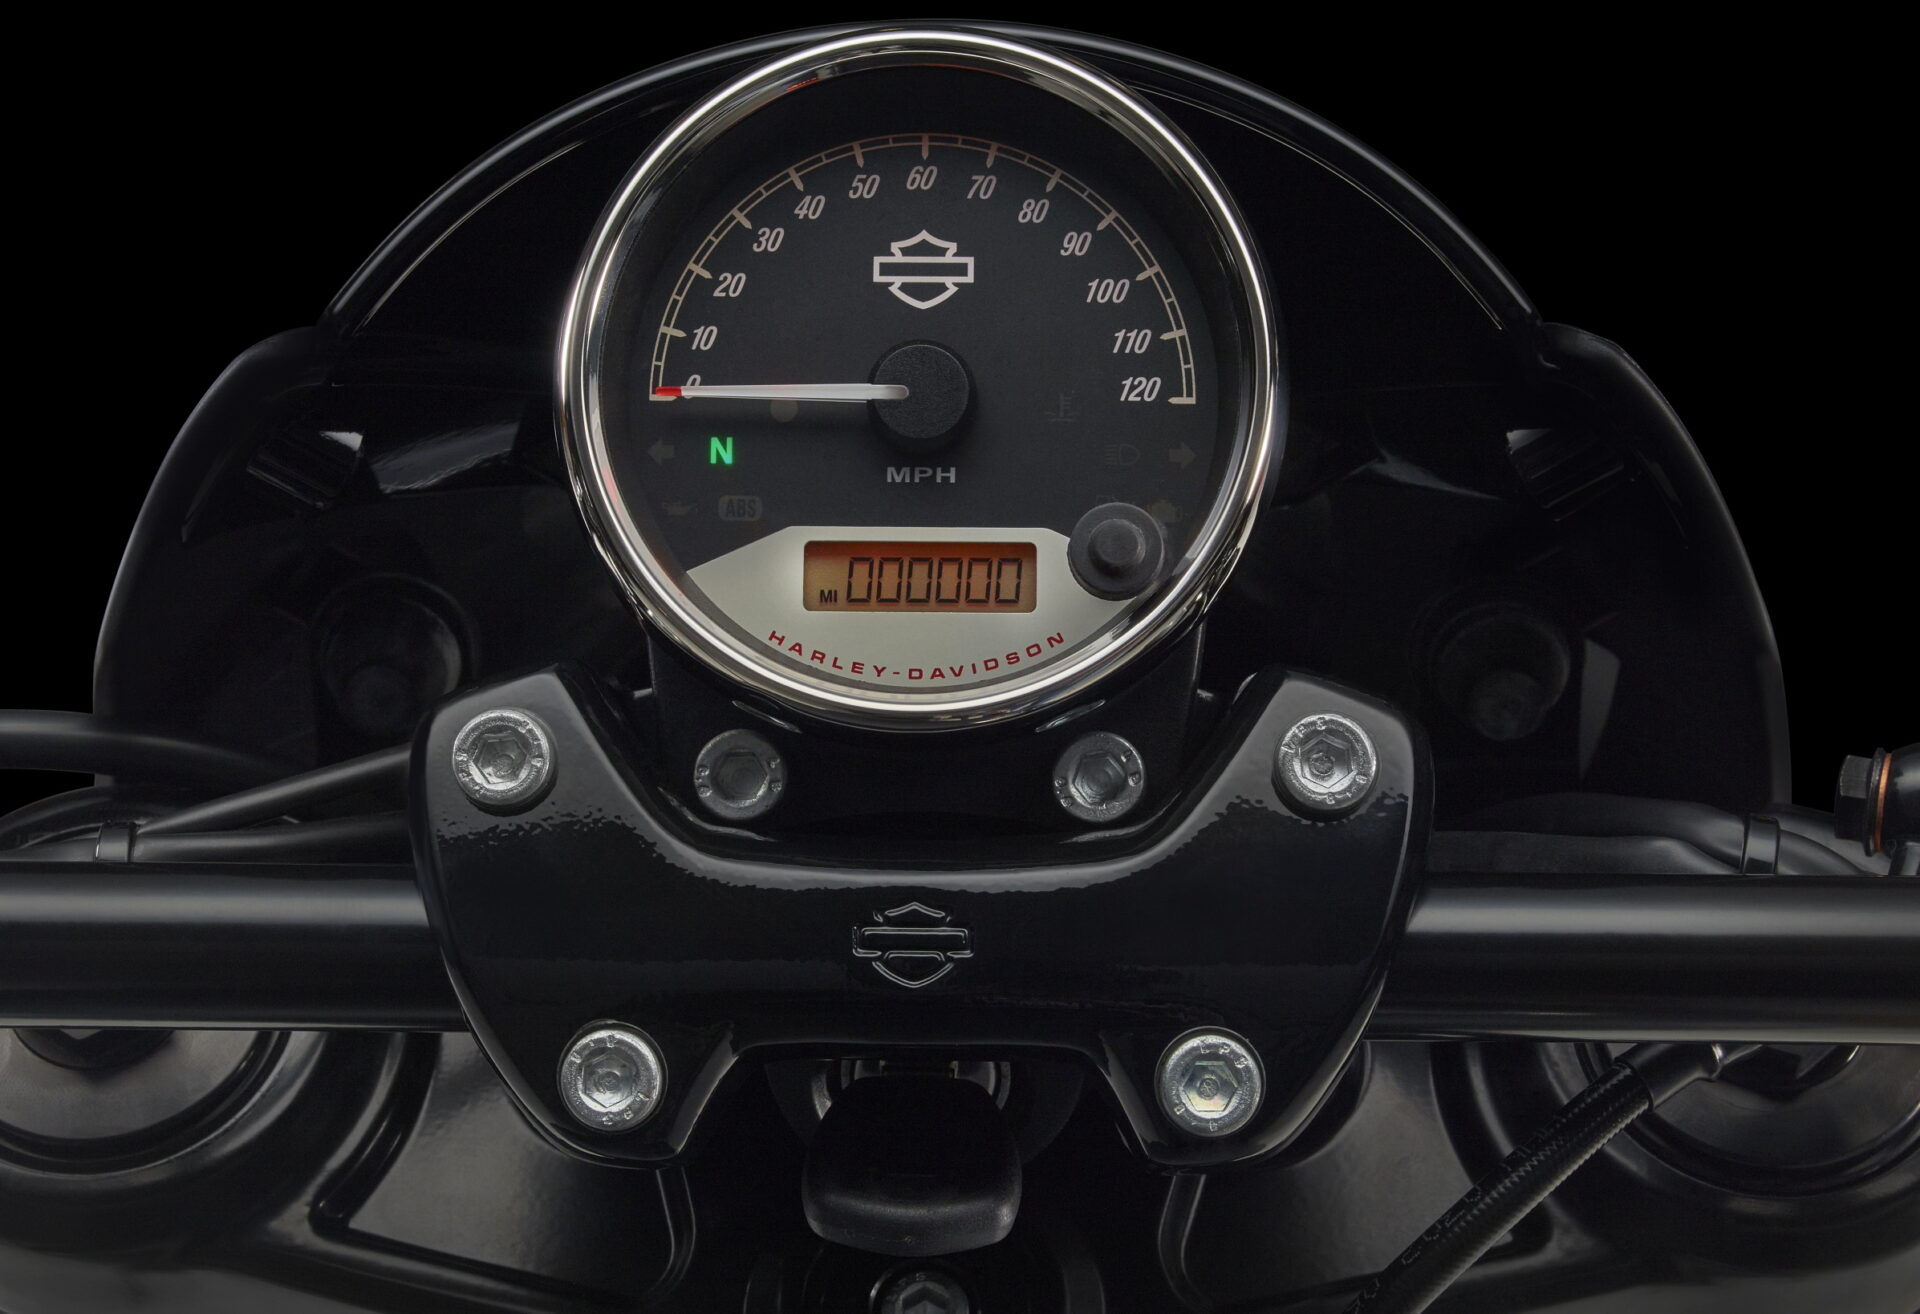 Harley-Davidson Street Rod 2020 dashboard